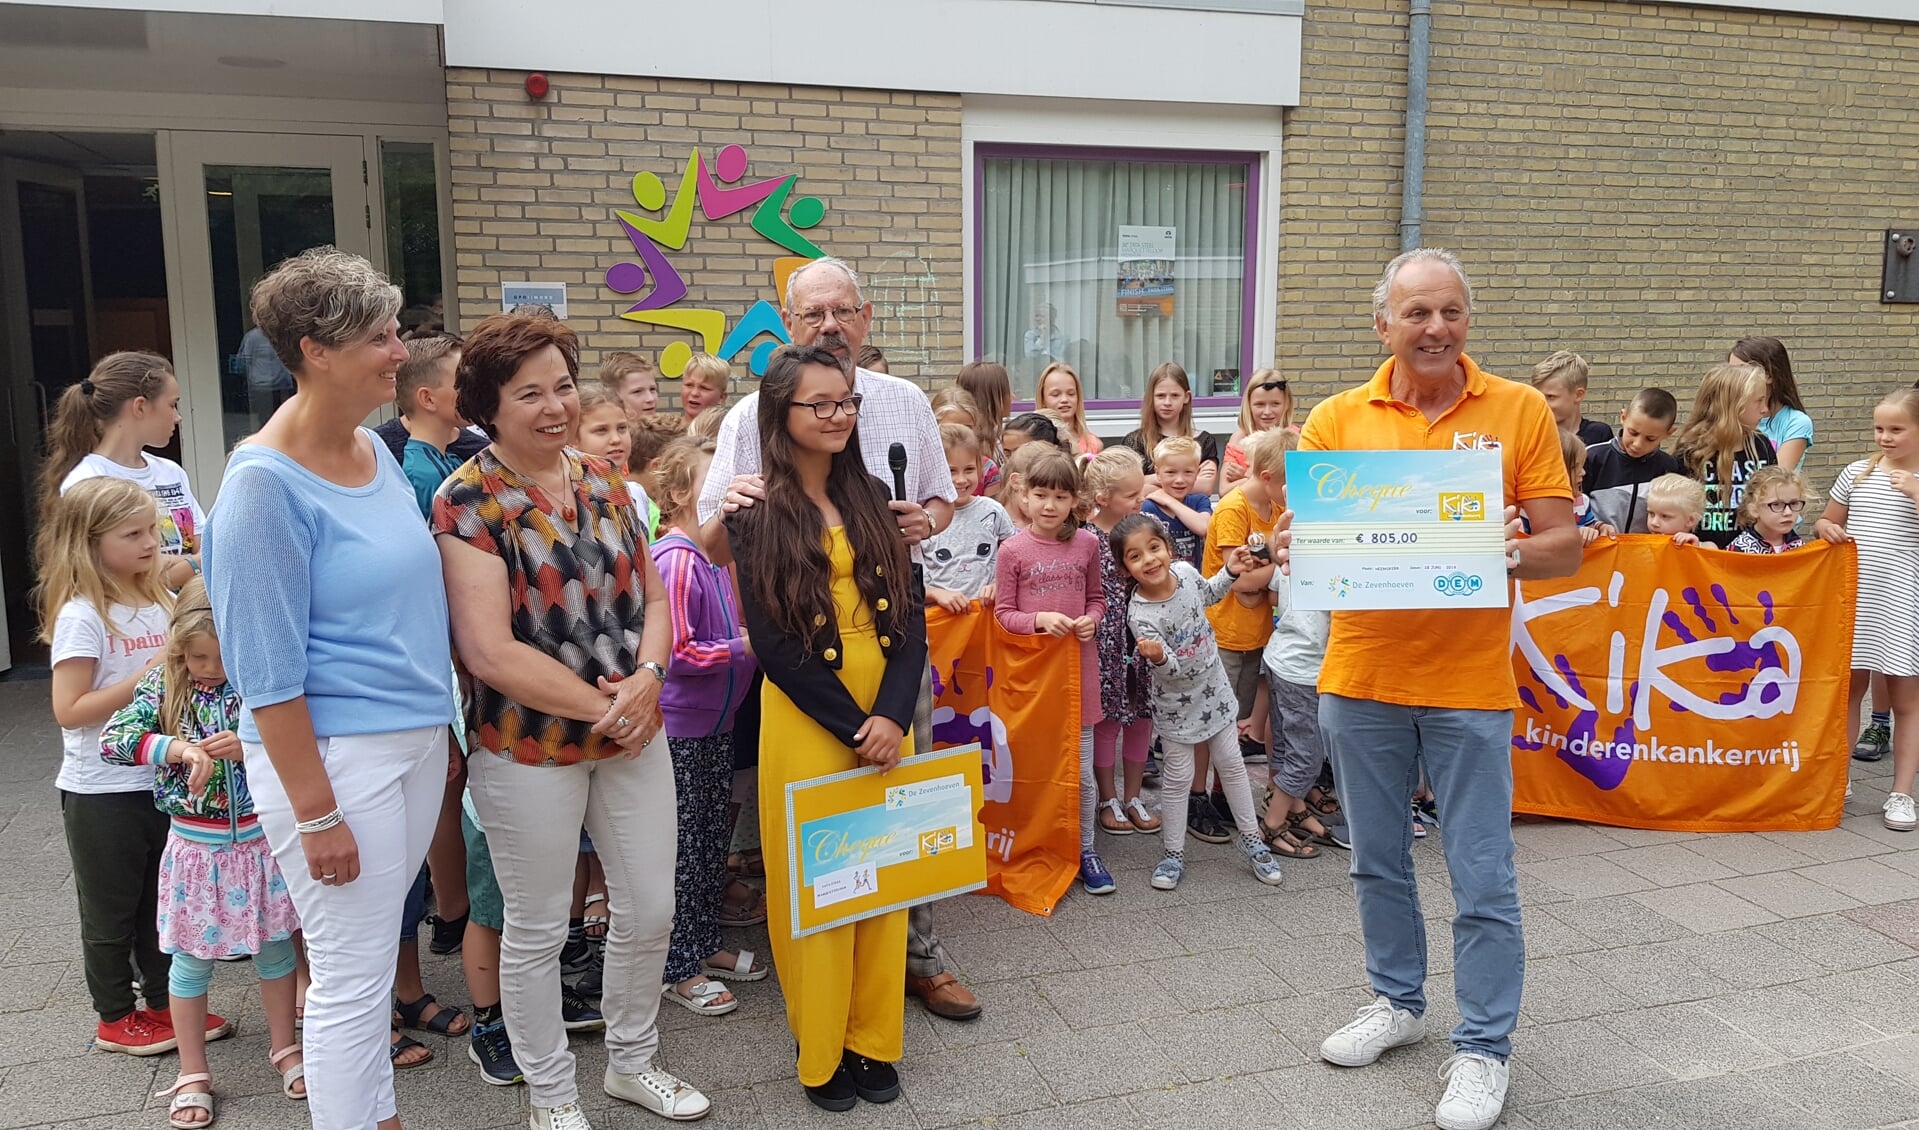 Op de foto: naast de kinderen die hebben meegelopen met de Sponsorloop, v.l.n.r.: Tineke Brasser (organisatie Marquetteloop), Chayenne van Breemen (initiatiefneemster) en Rien Schimmel (KiKa).